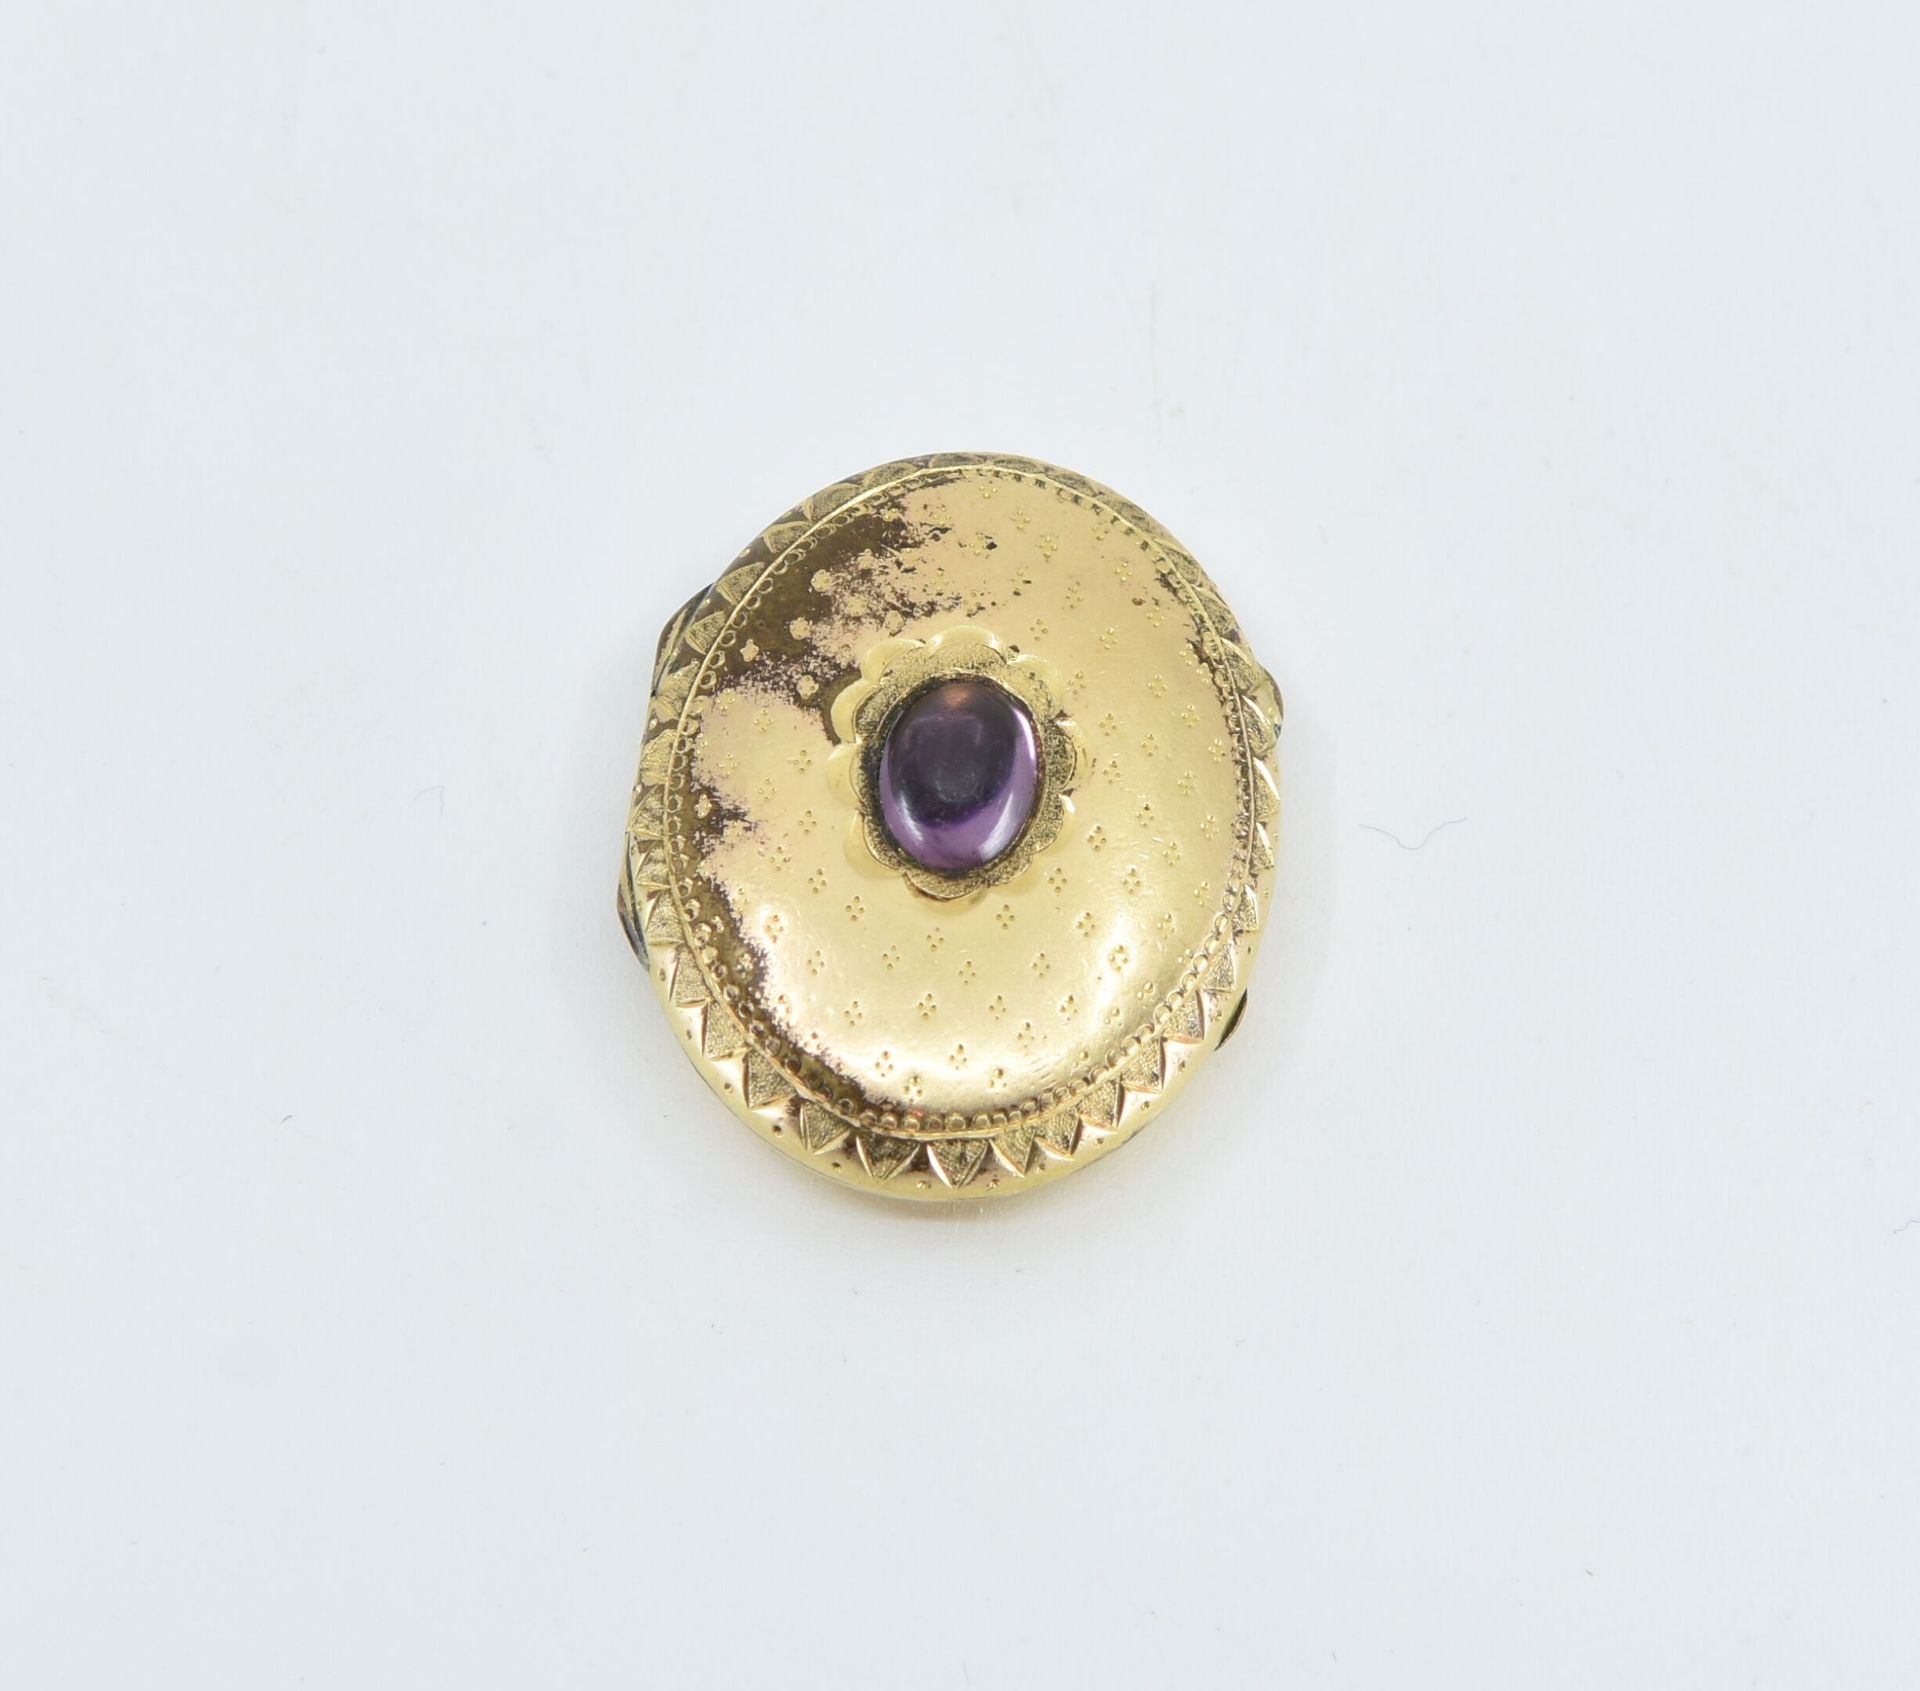 Null 镶有凸圆形紫水晶的鎏金金属吊坠
毛重：7克（玻璃内）。 
遗失扣子 

按指定用途出售的拍品